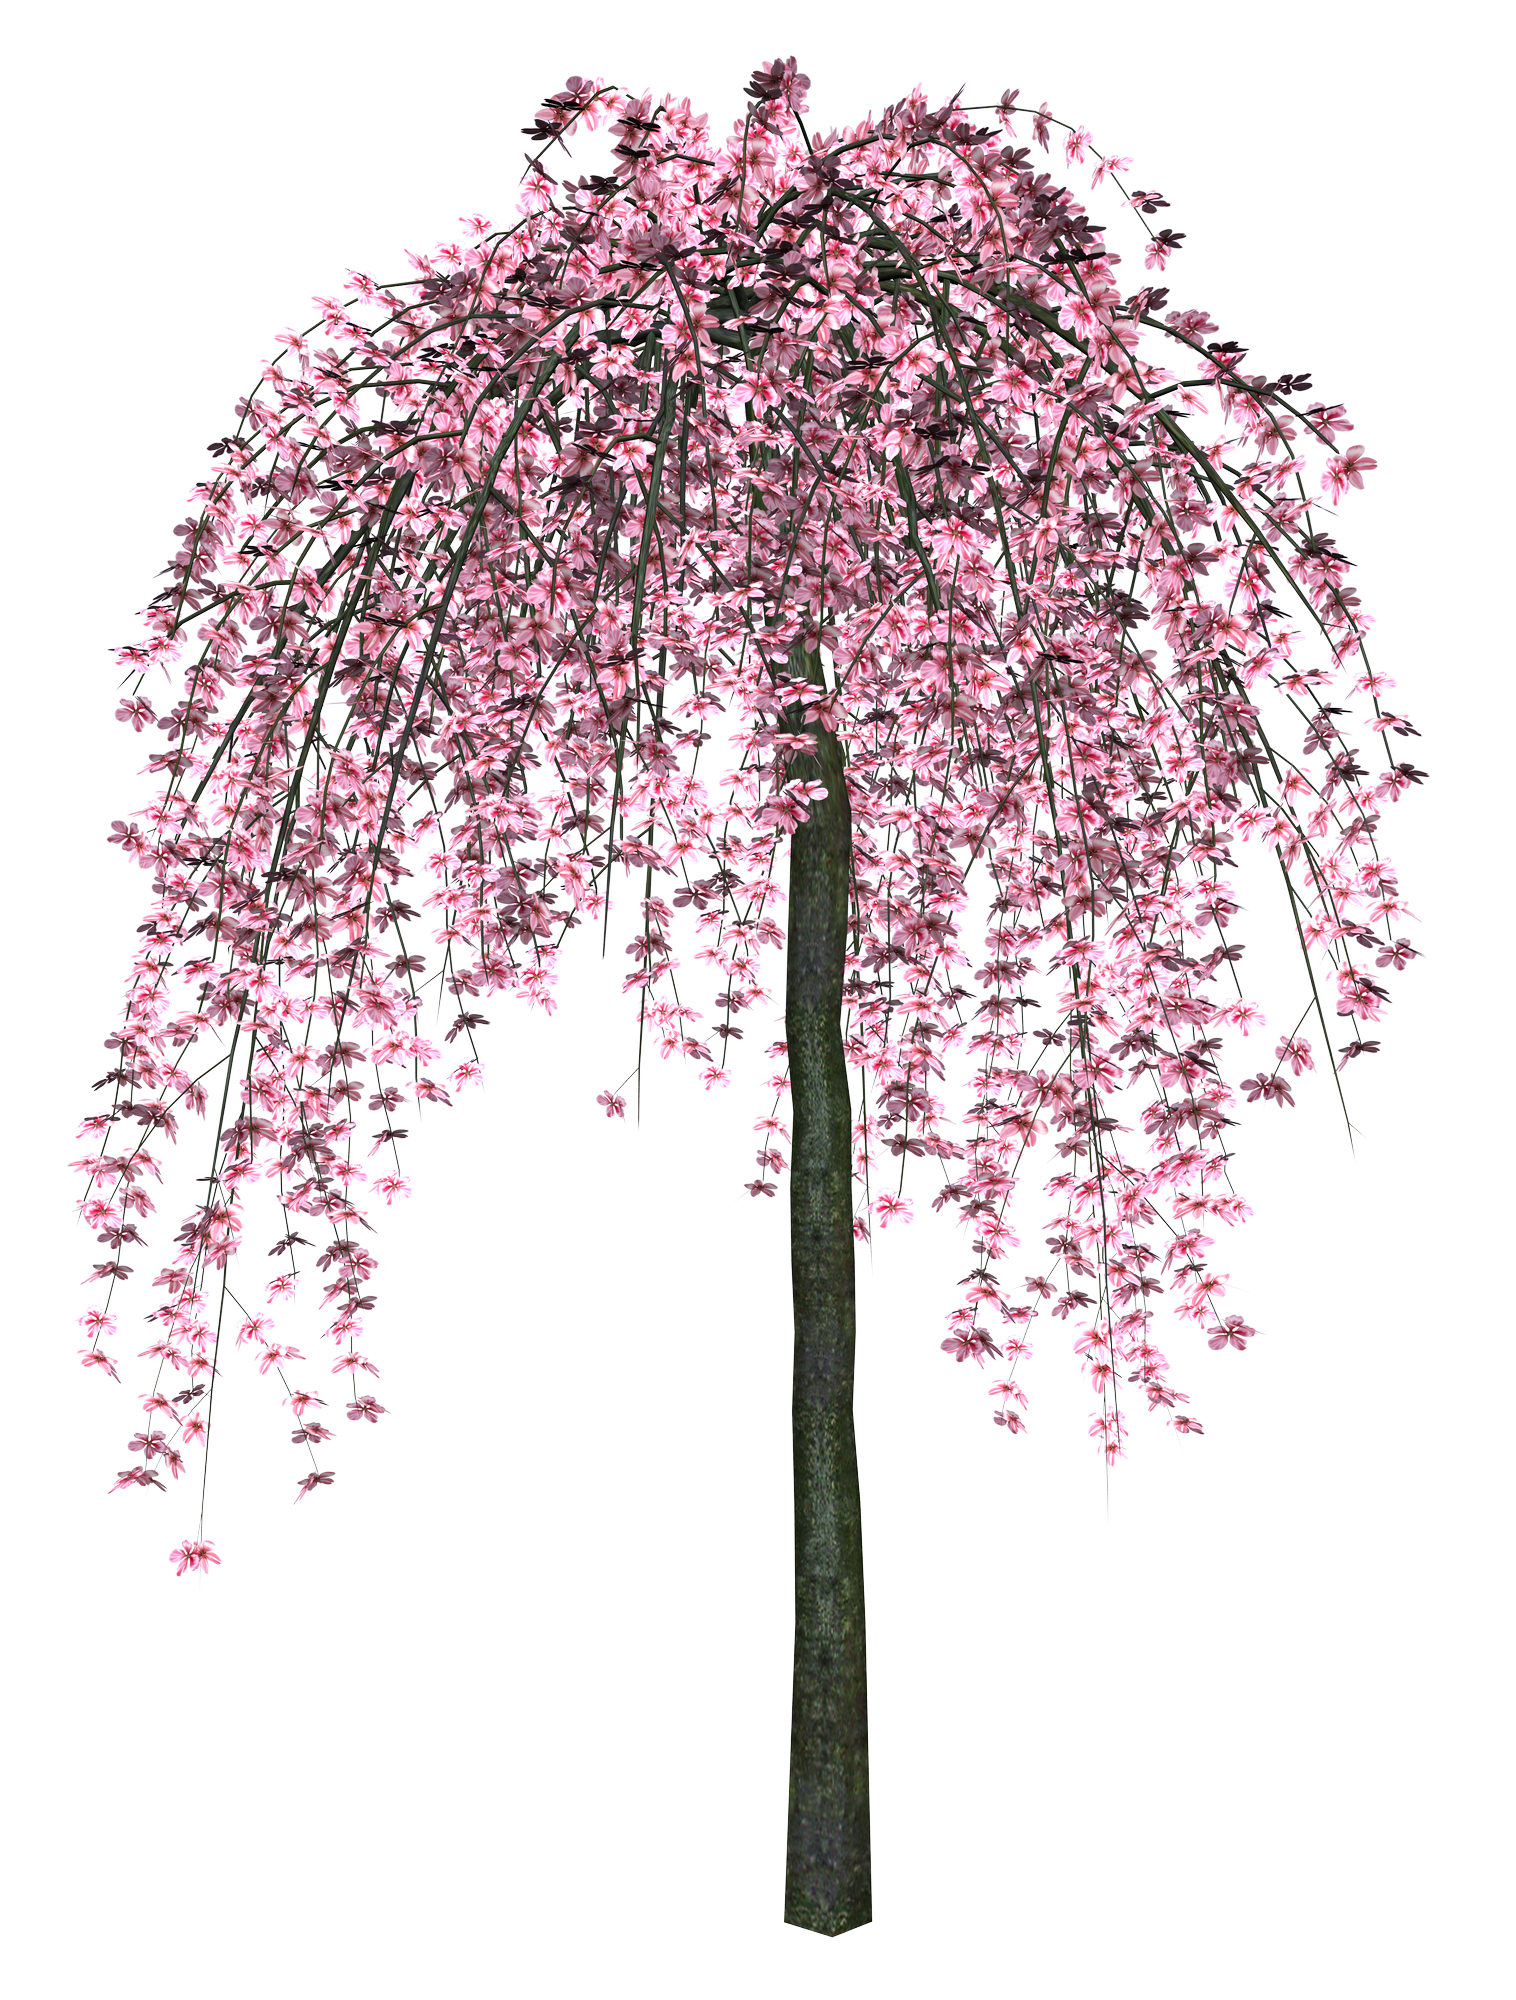 Sakura PNG images